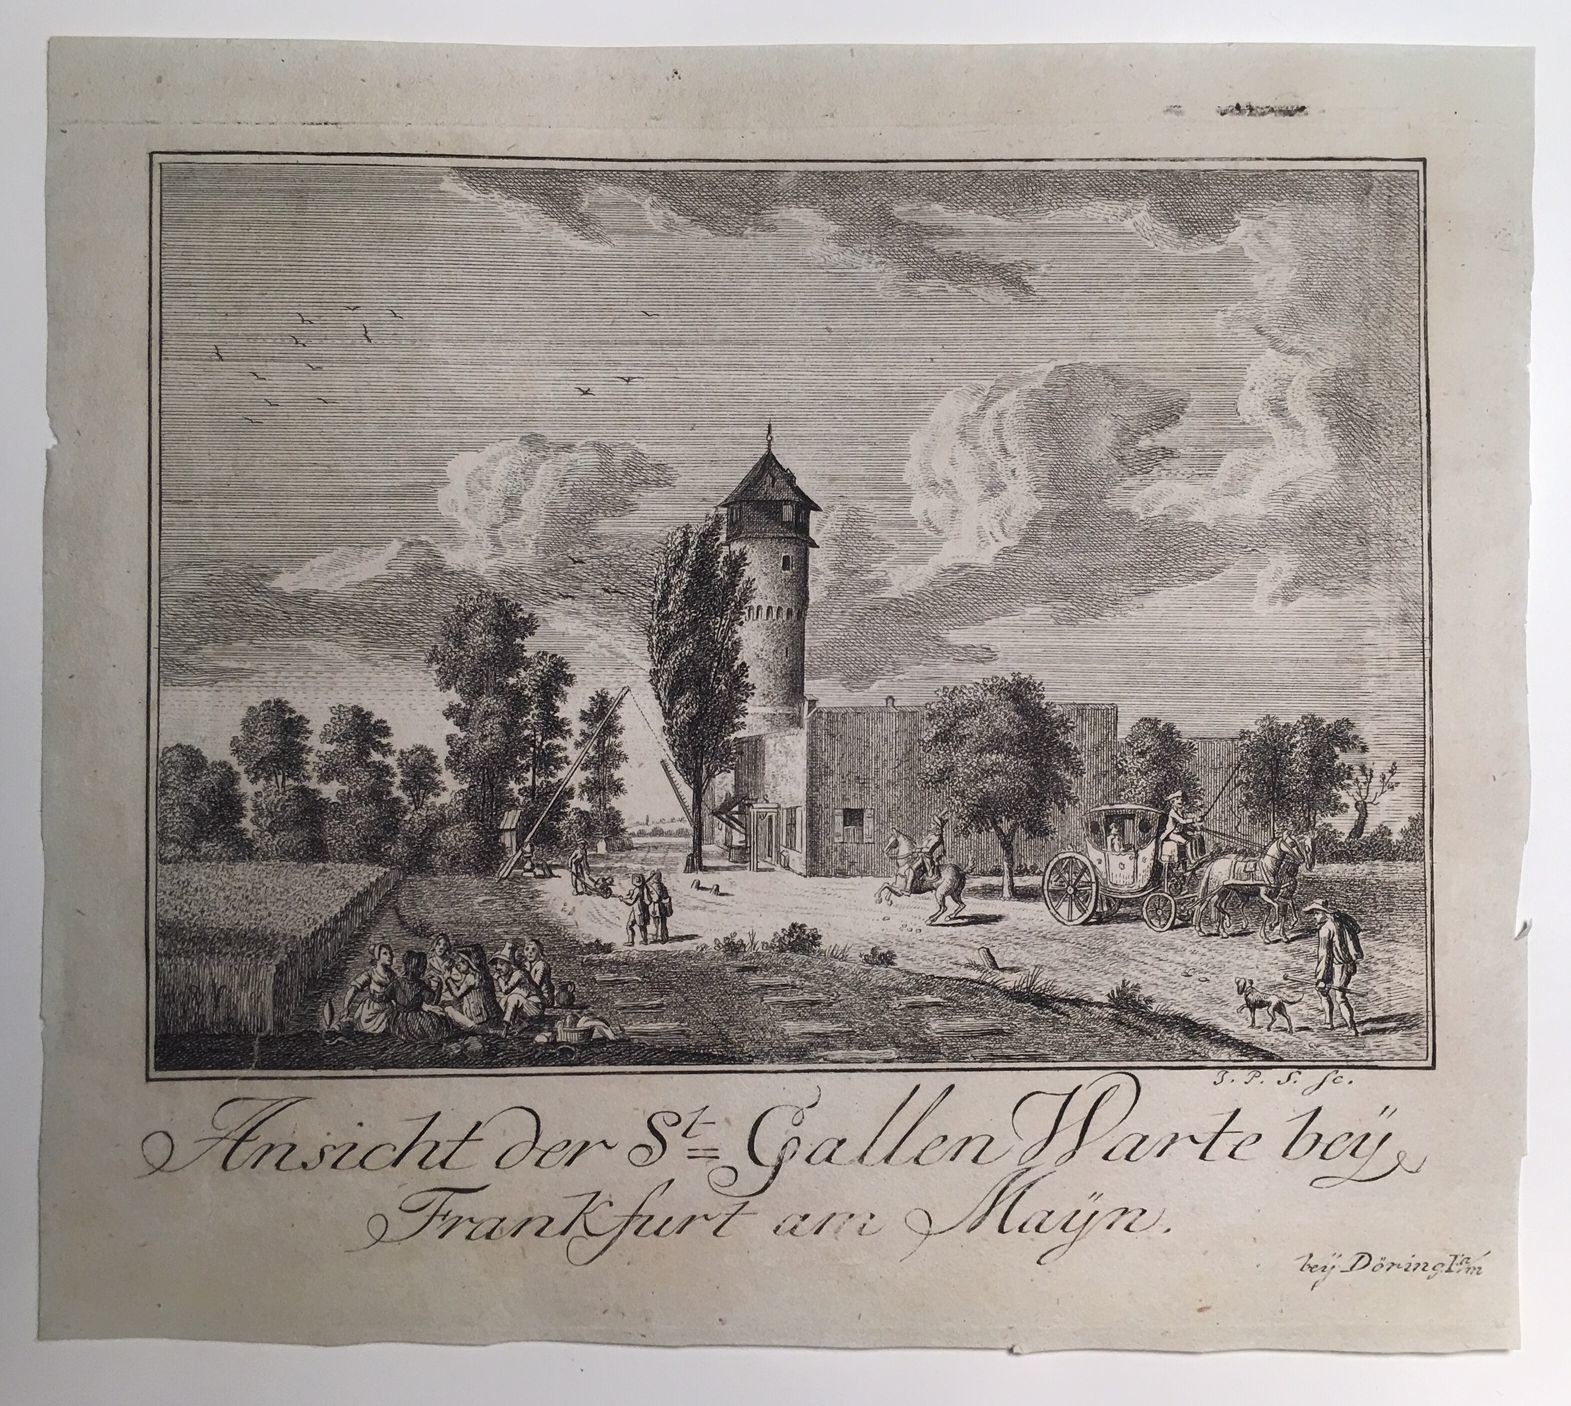 Ansicht der St. Gallen Warte bey Frankfurt am Mayn, 1790 (Taunus-Rhein-Main - Regionalgeschichtliche Sammlung Dr. Stefan Naas CC BY-NC-SA)